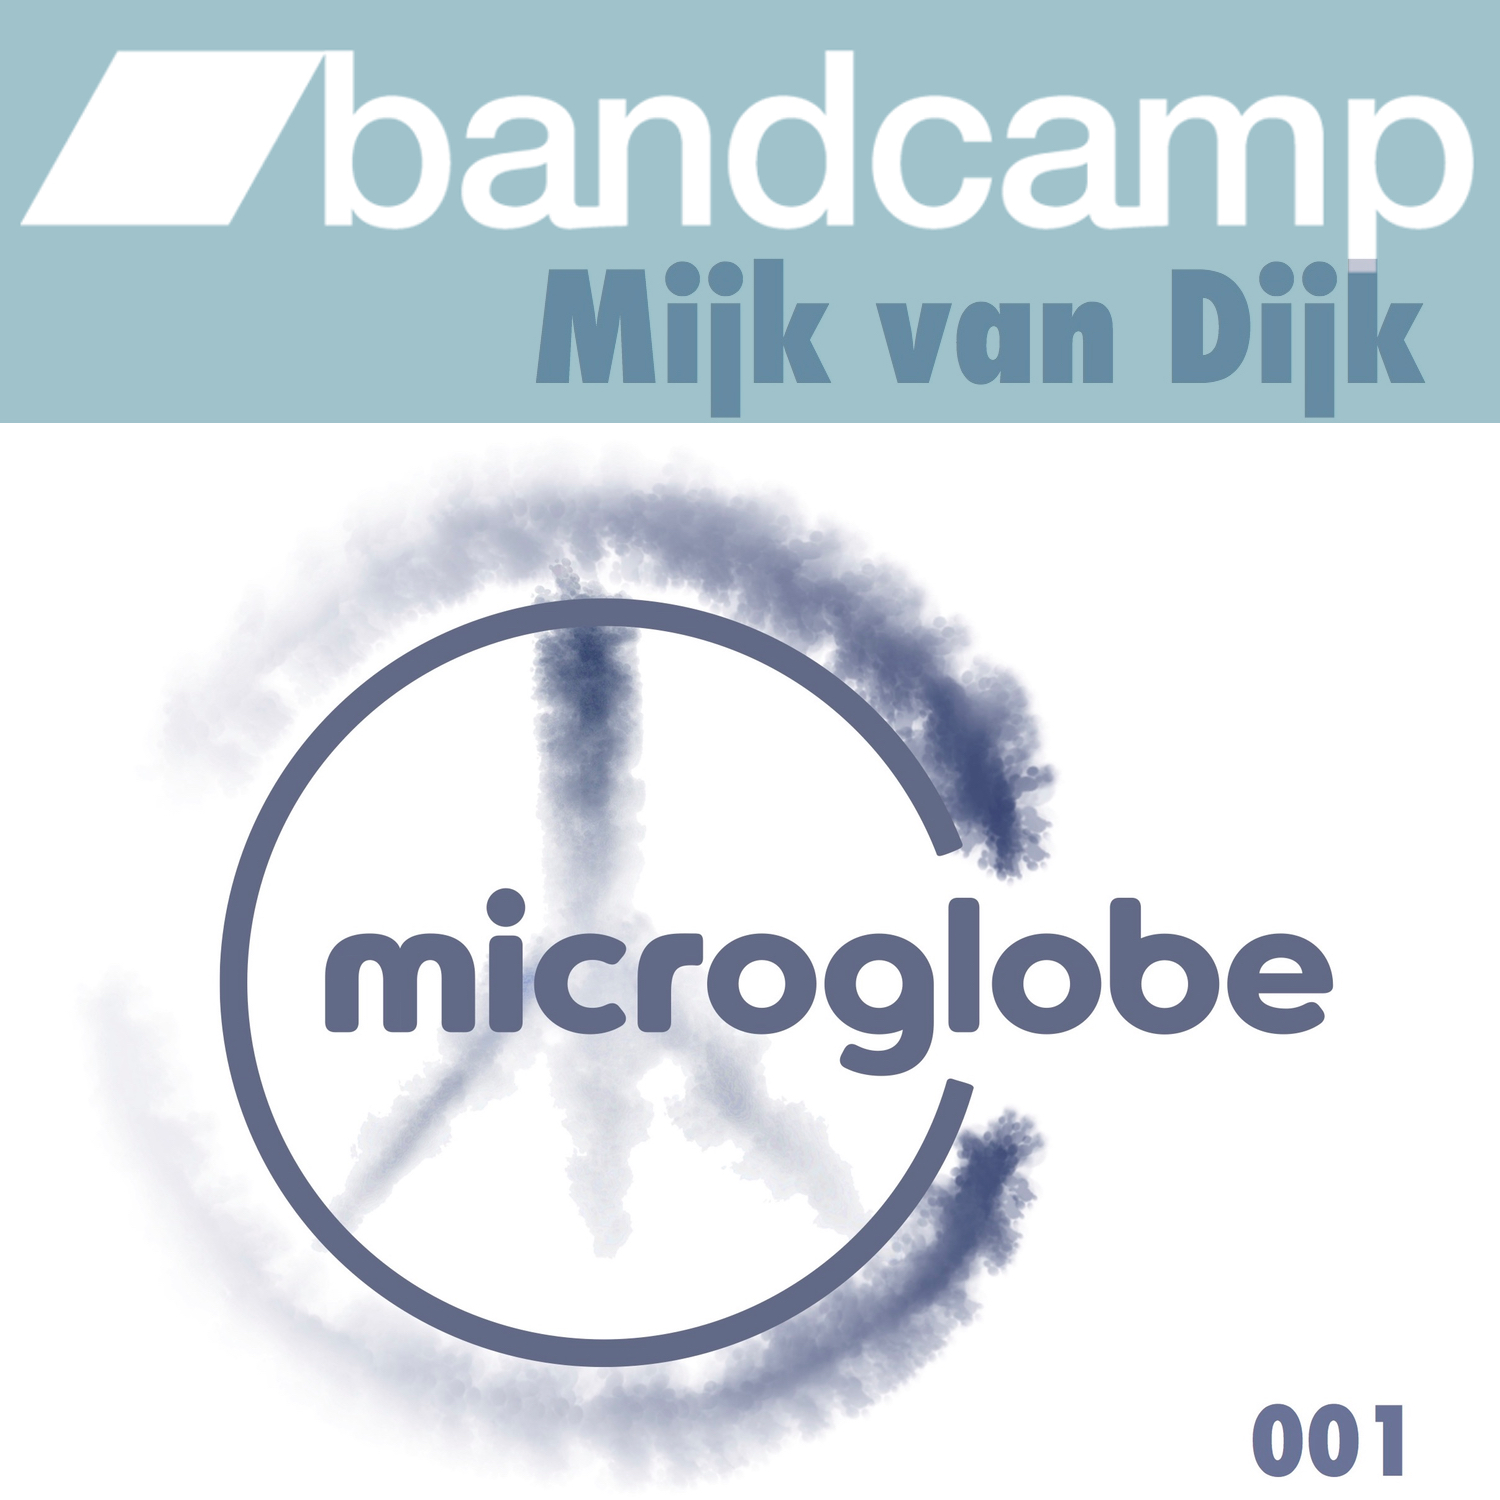 Mijk van Dijk on Bandcamp now!